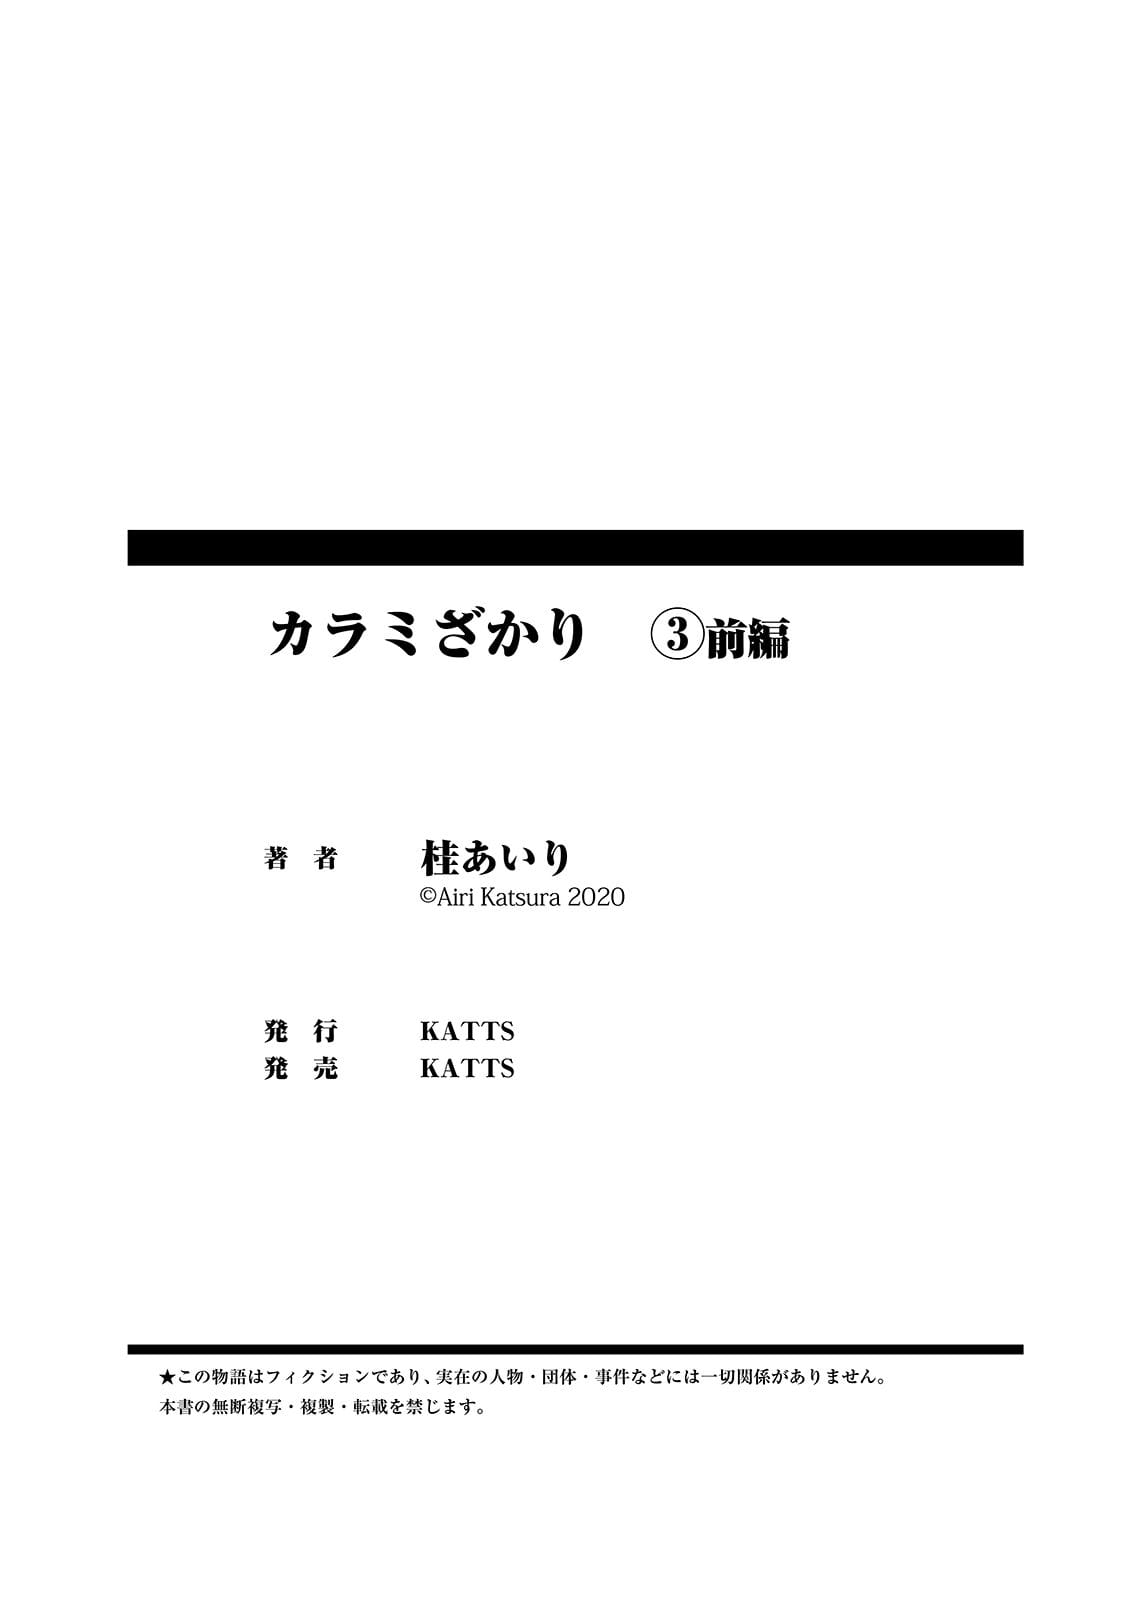 Katsura Airi Karami Zakari vol. 3 Zenpen Colorized - part 4